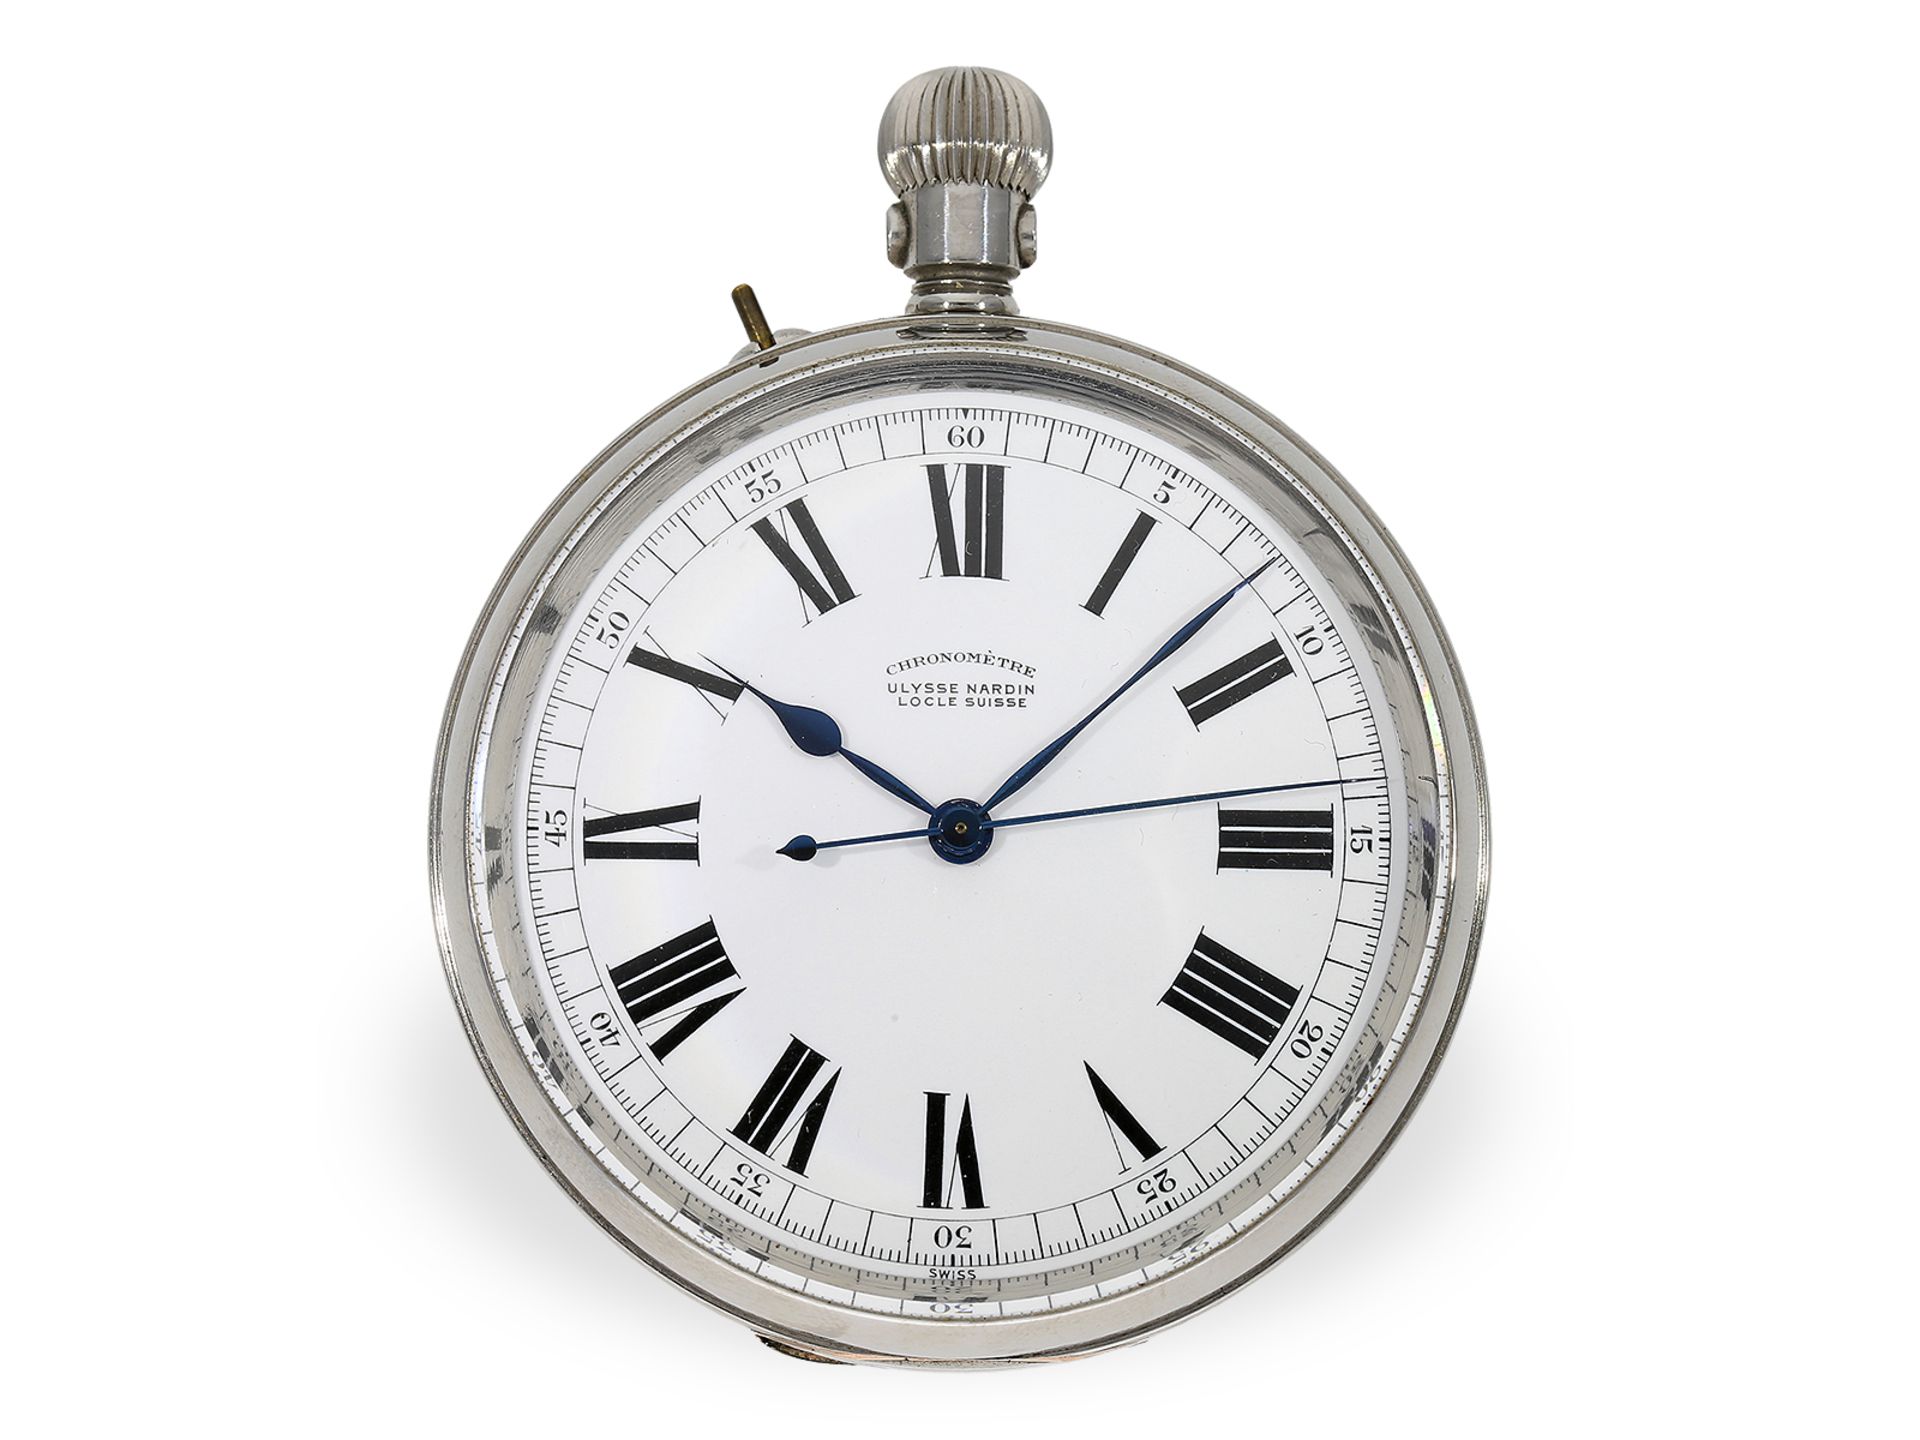 Hervorragend erhaltenes, nahezu neuwertiges Beobachtungschronometer, Ulysse Nardin für das englische - Bild 2 aus 7